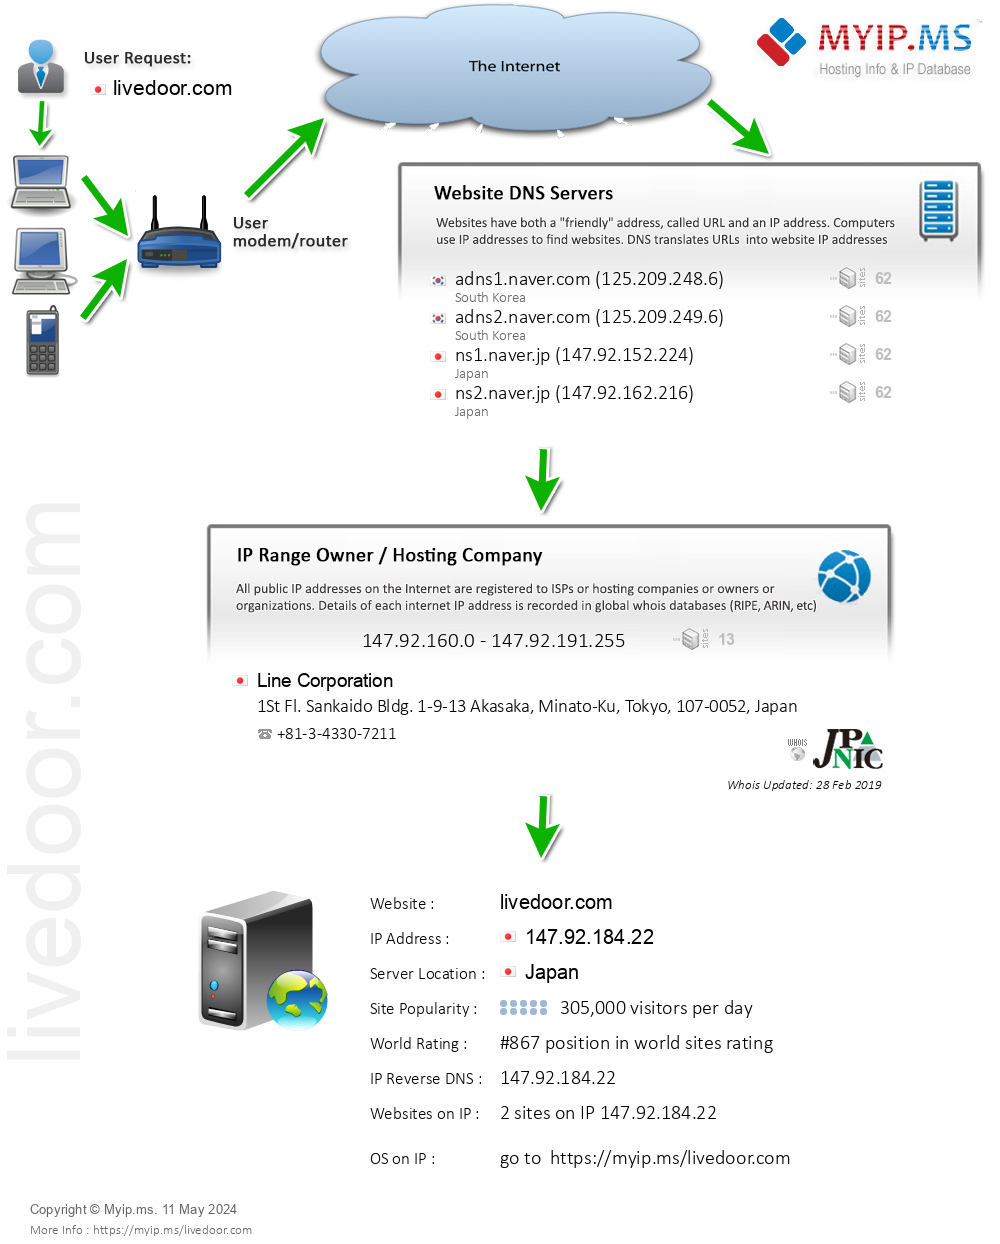 Livedoor.com - Website Hosting Visual IP Diagram